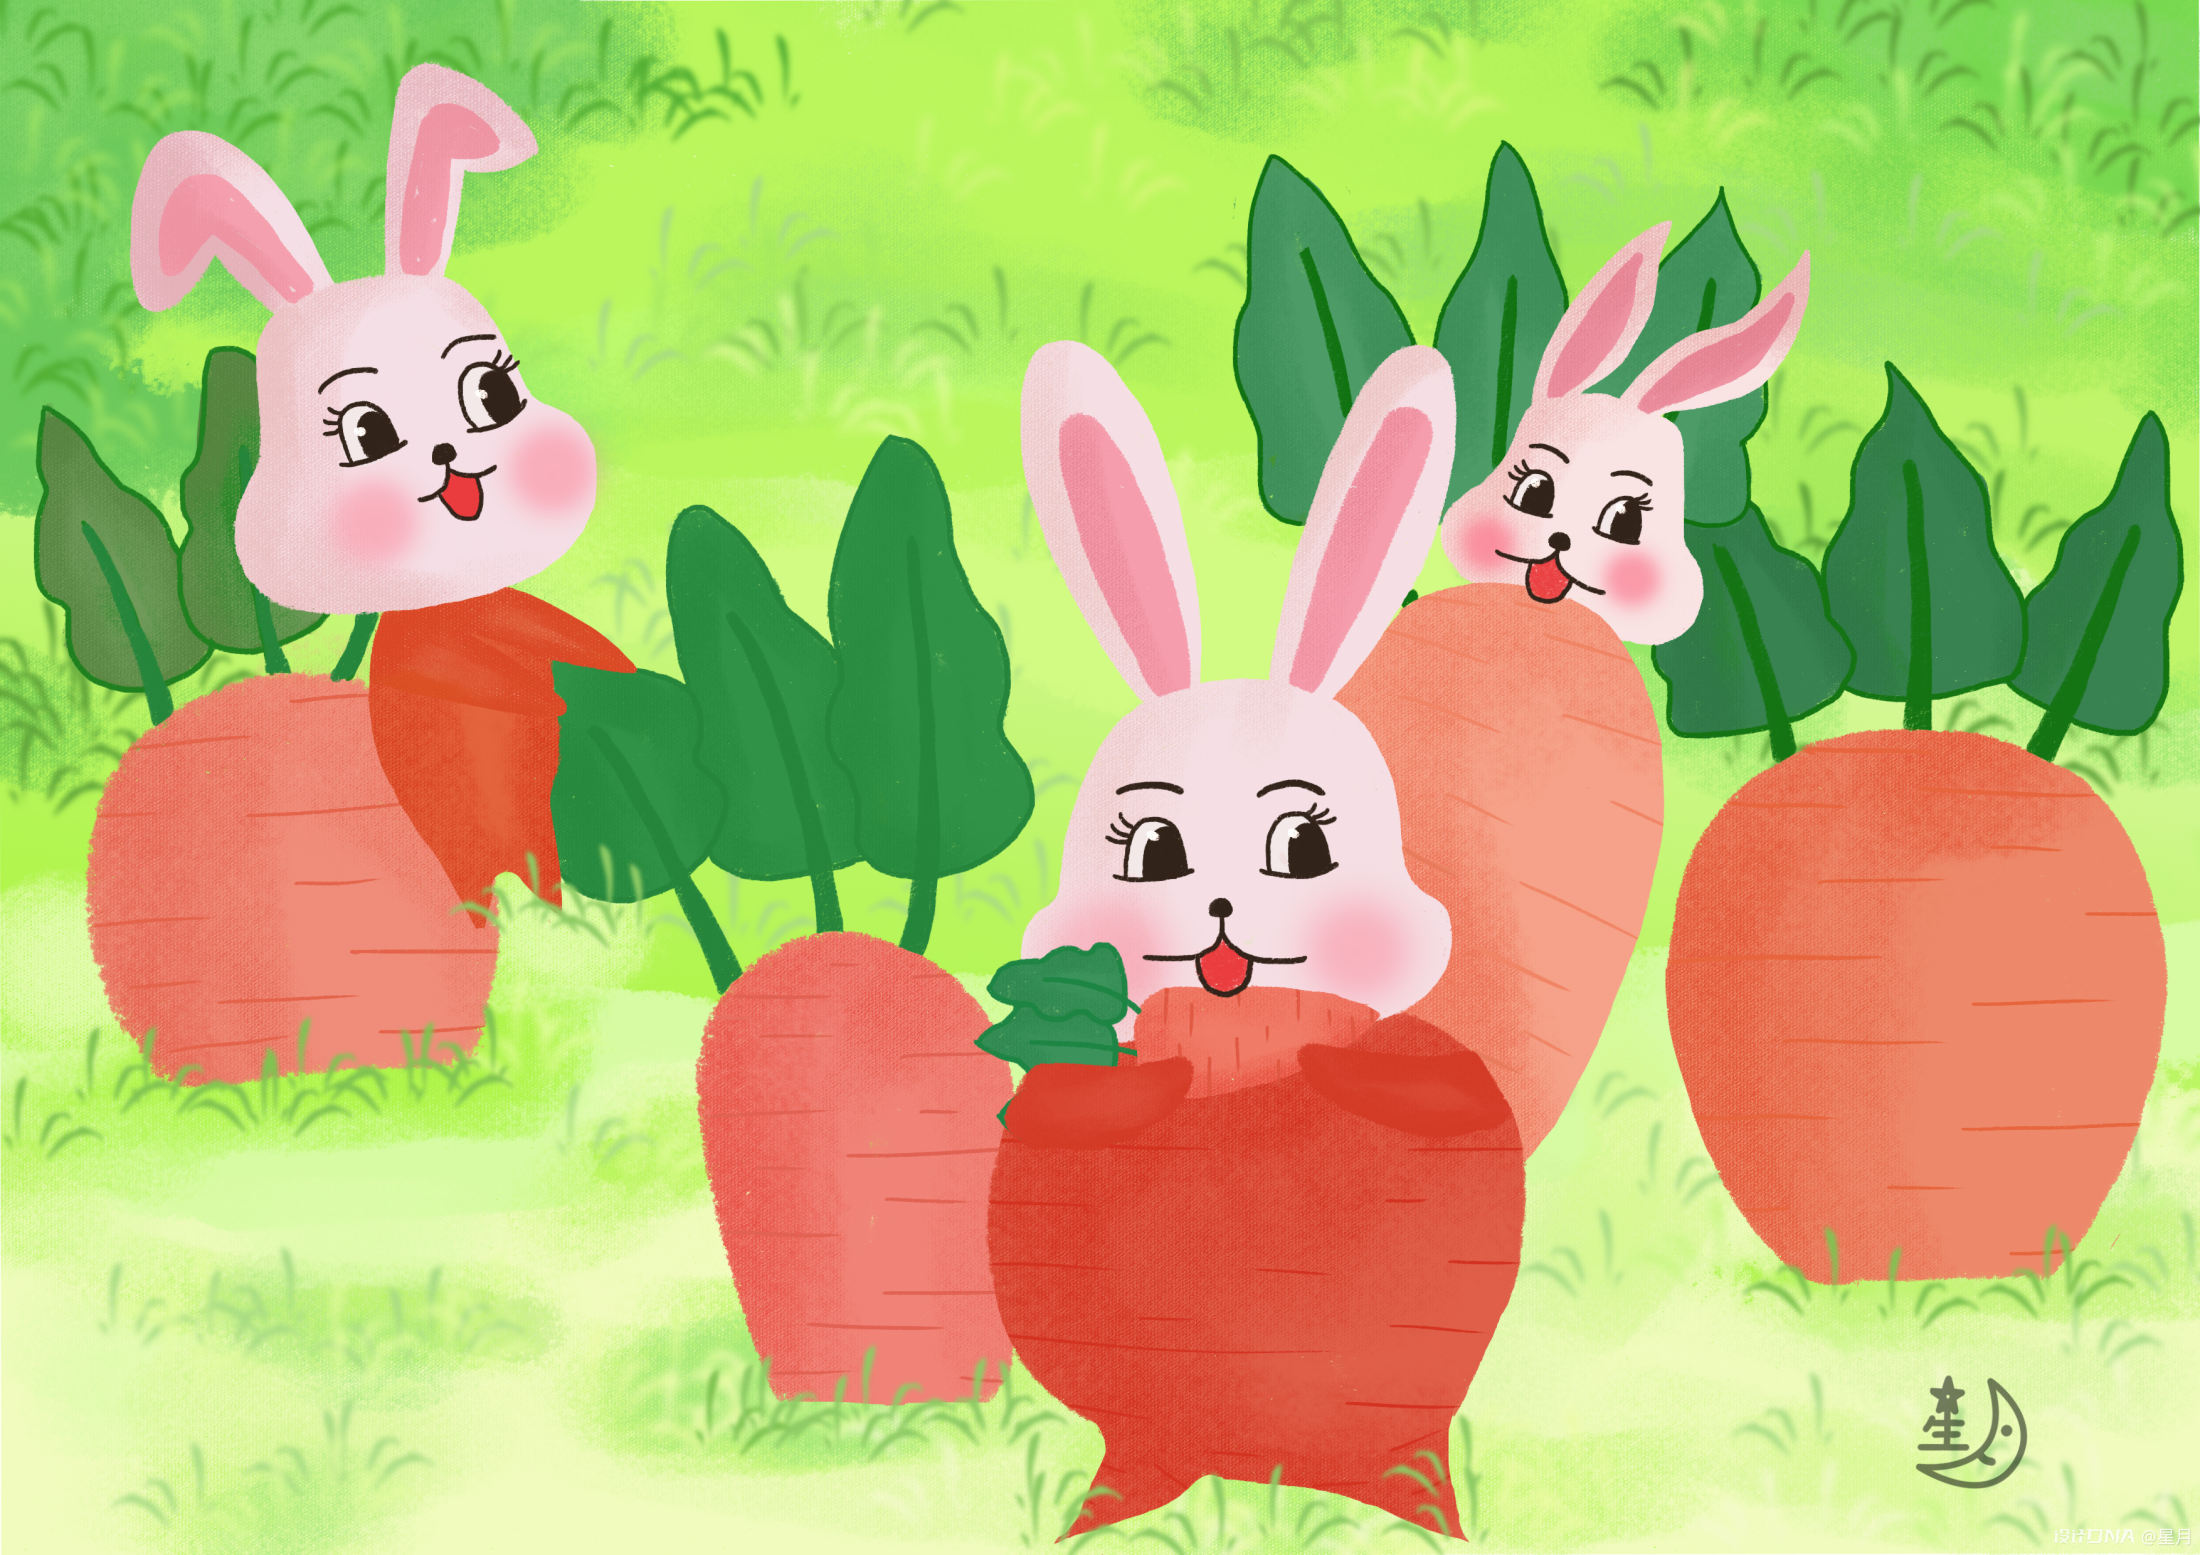 手繪卡通兔子可愛胡蘿蔔動態gif元素, 手繪, 卡通, 可愛素材圖案，PSD和PNG圖片免費下載